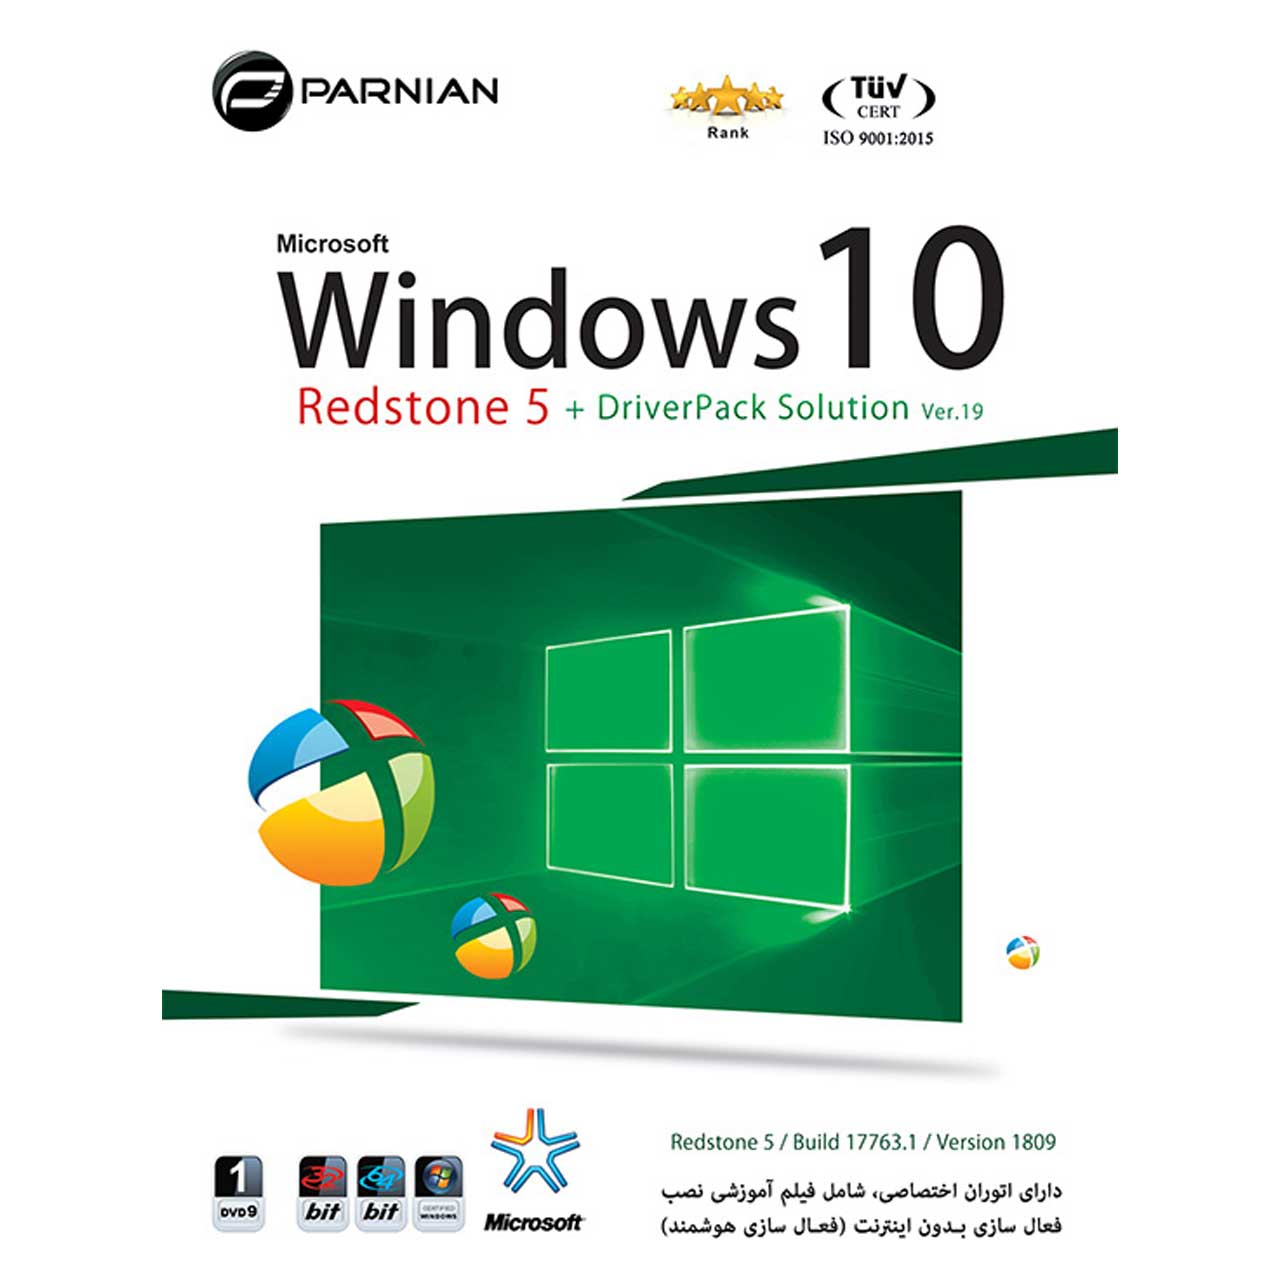 نرم افزار ویندوز 10 رد استون 5 به همراه  DriverPack Solution Ver.19 نشر پرنیان